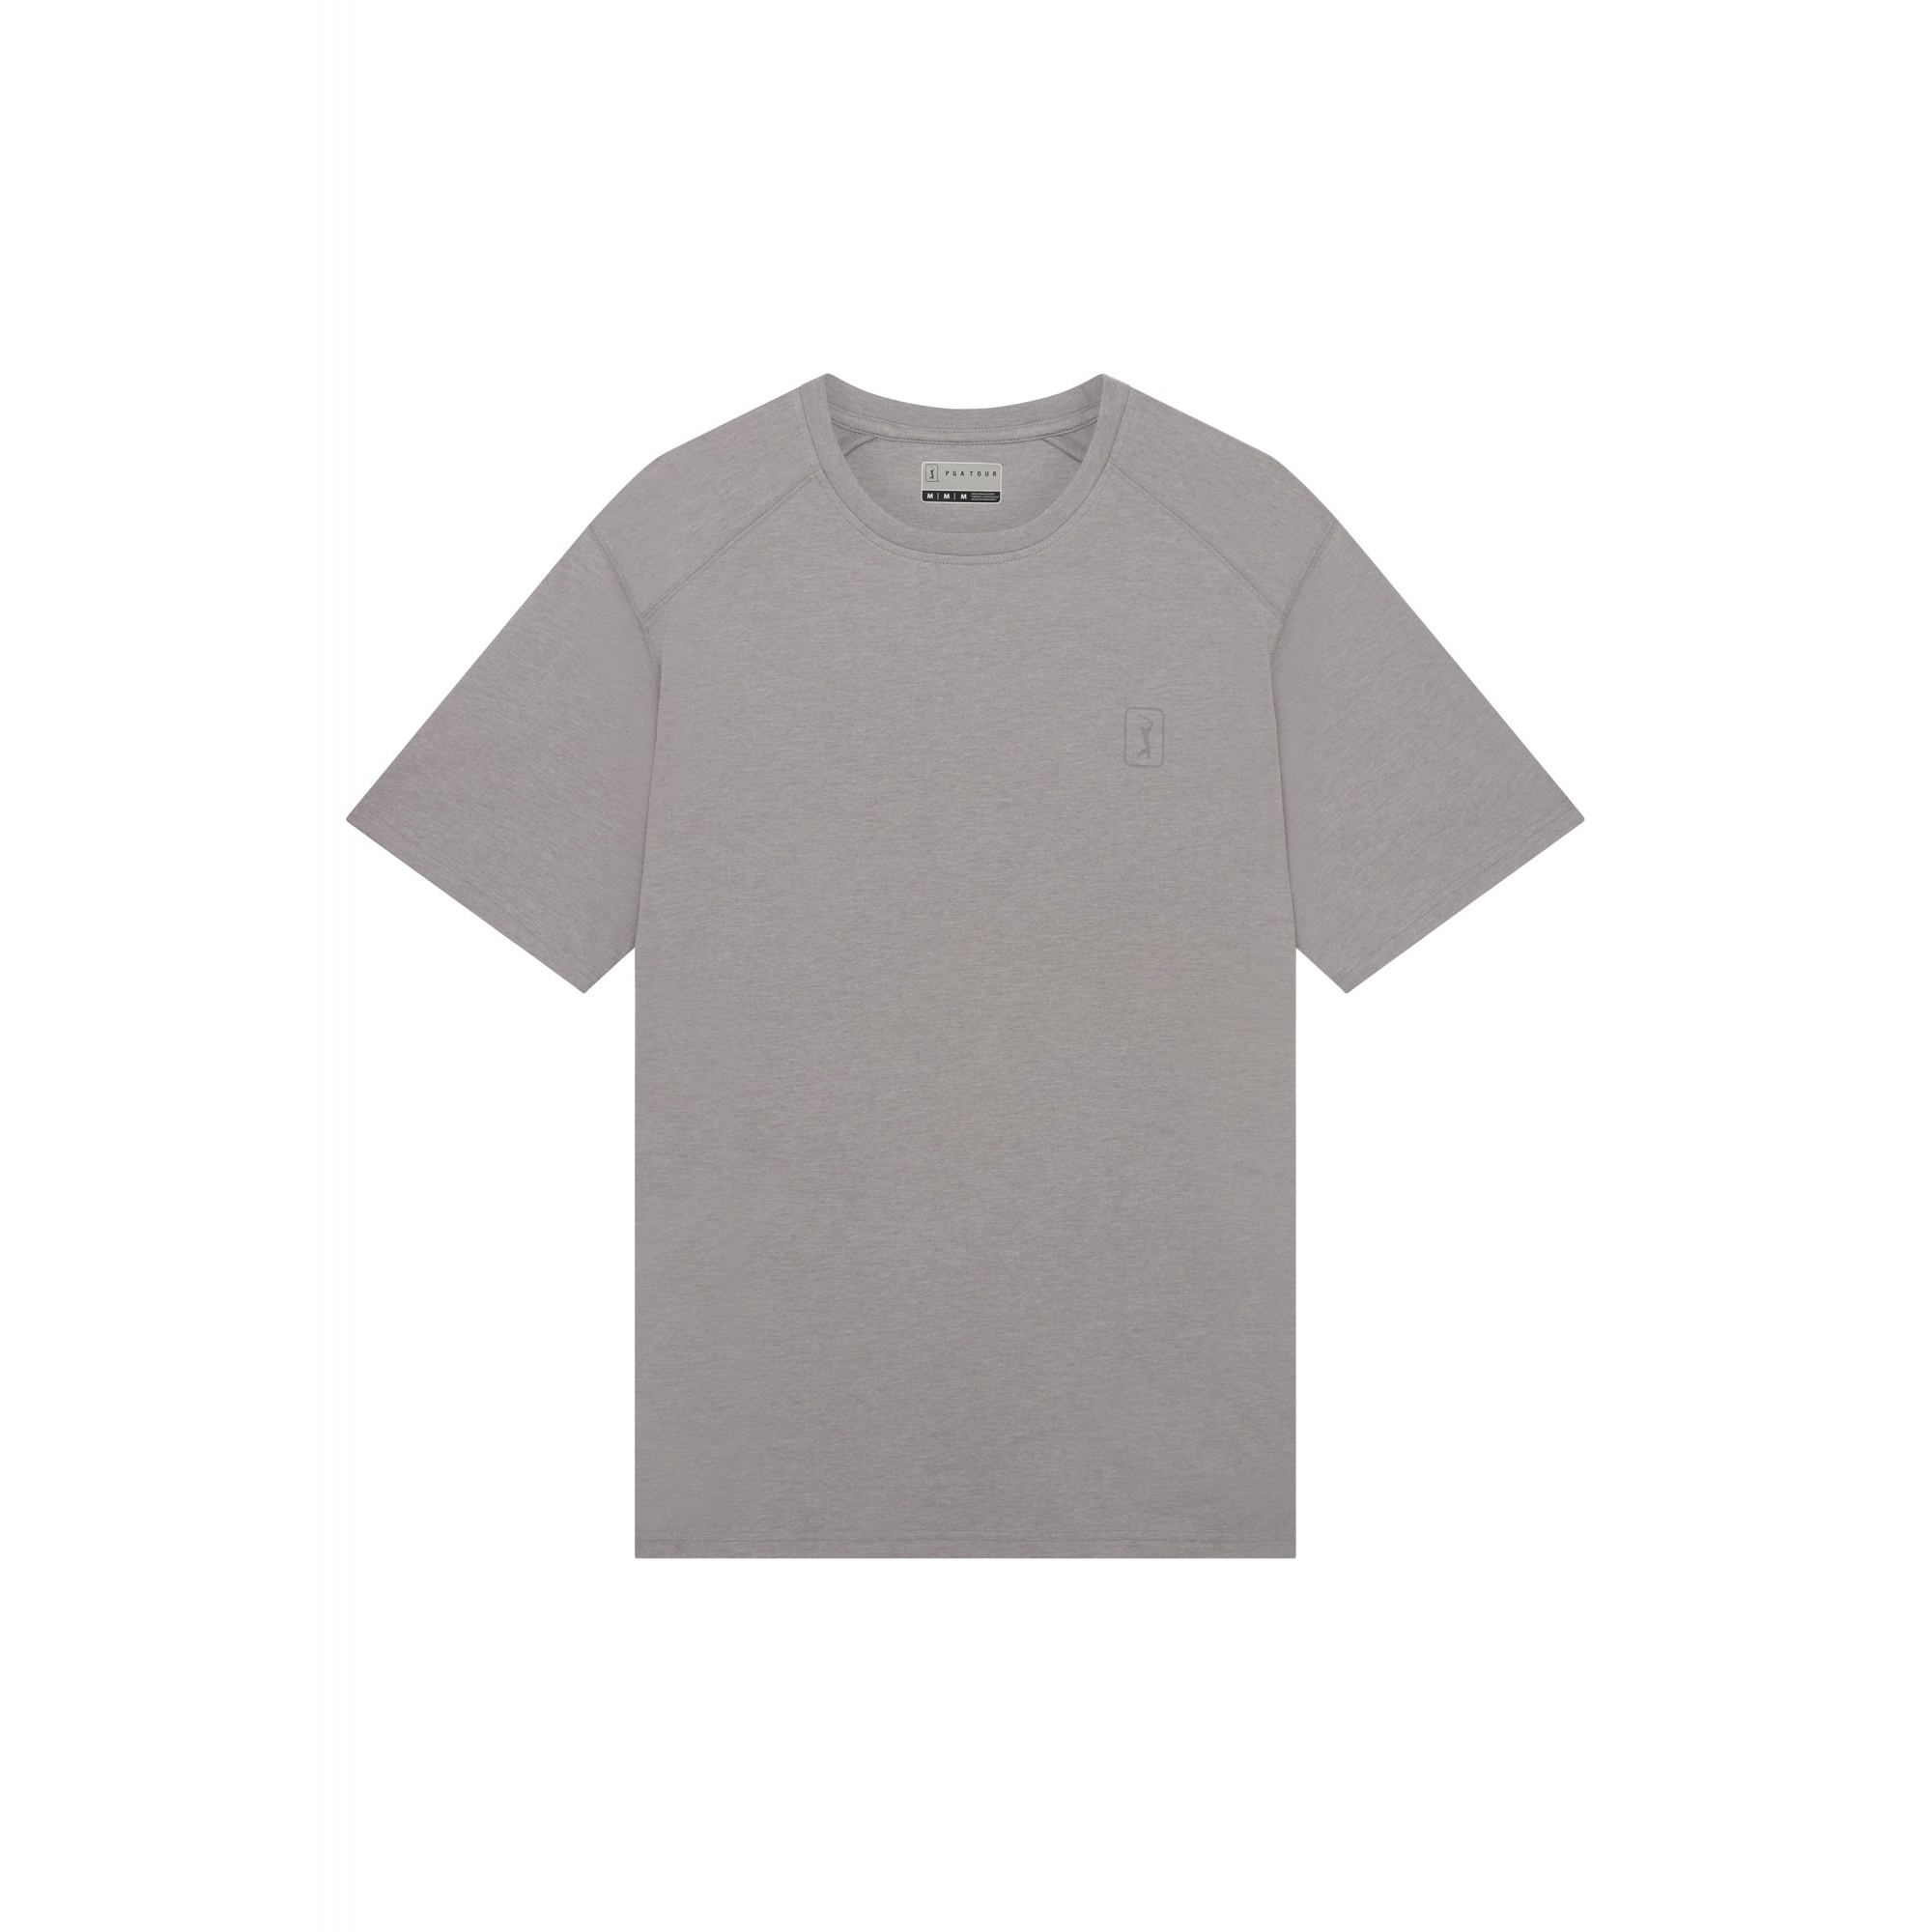 Camiseta De Rendimiento Pga Tour - gris - 